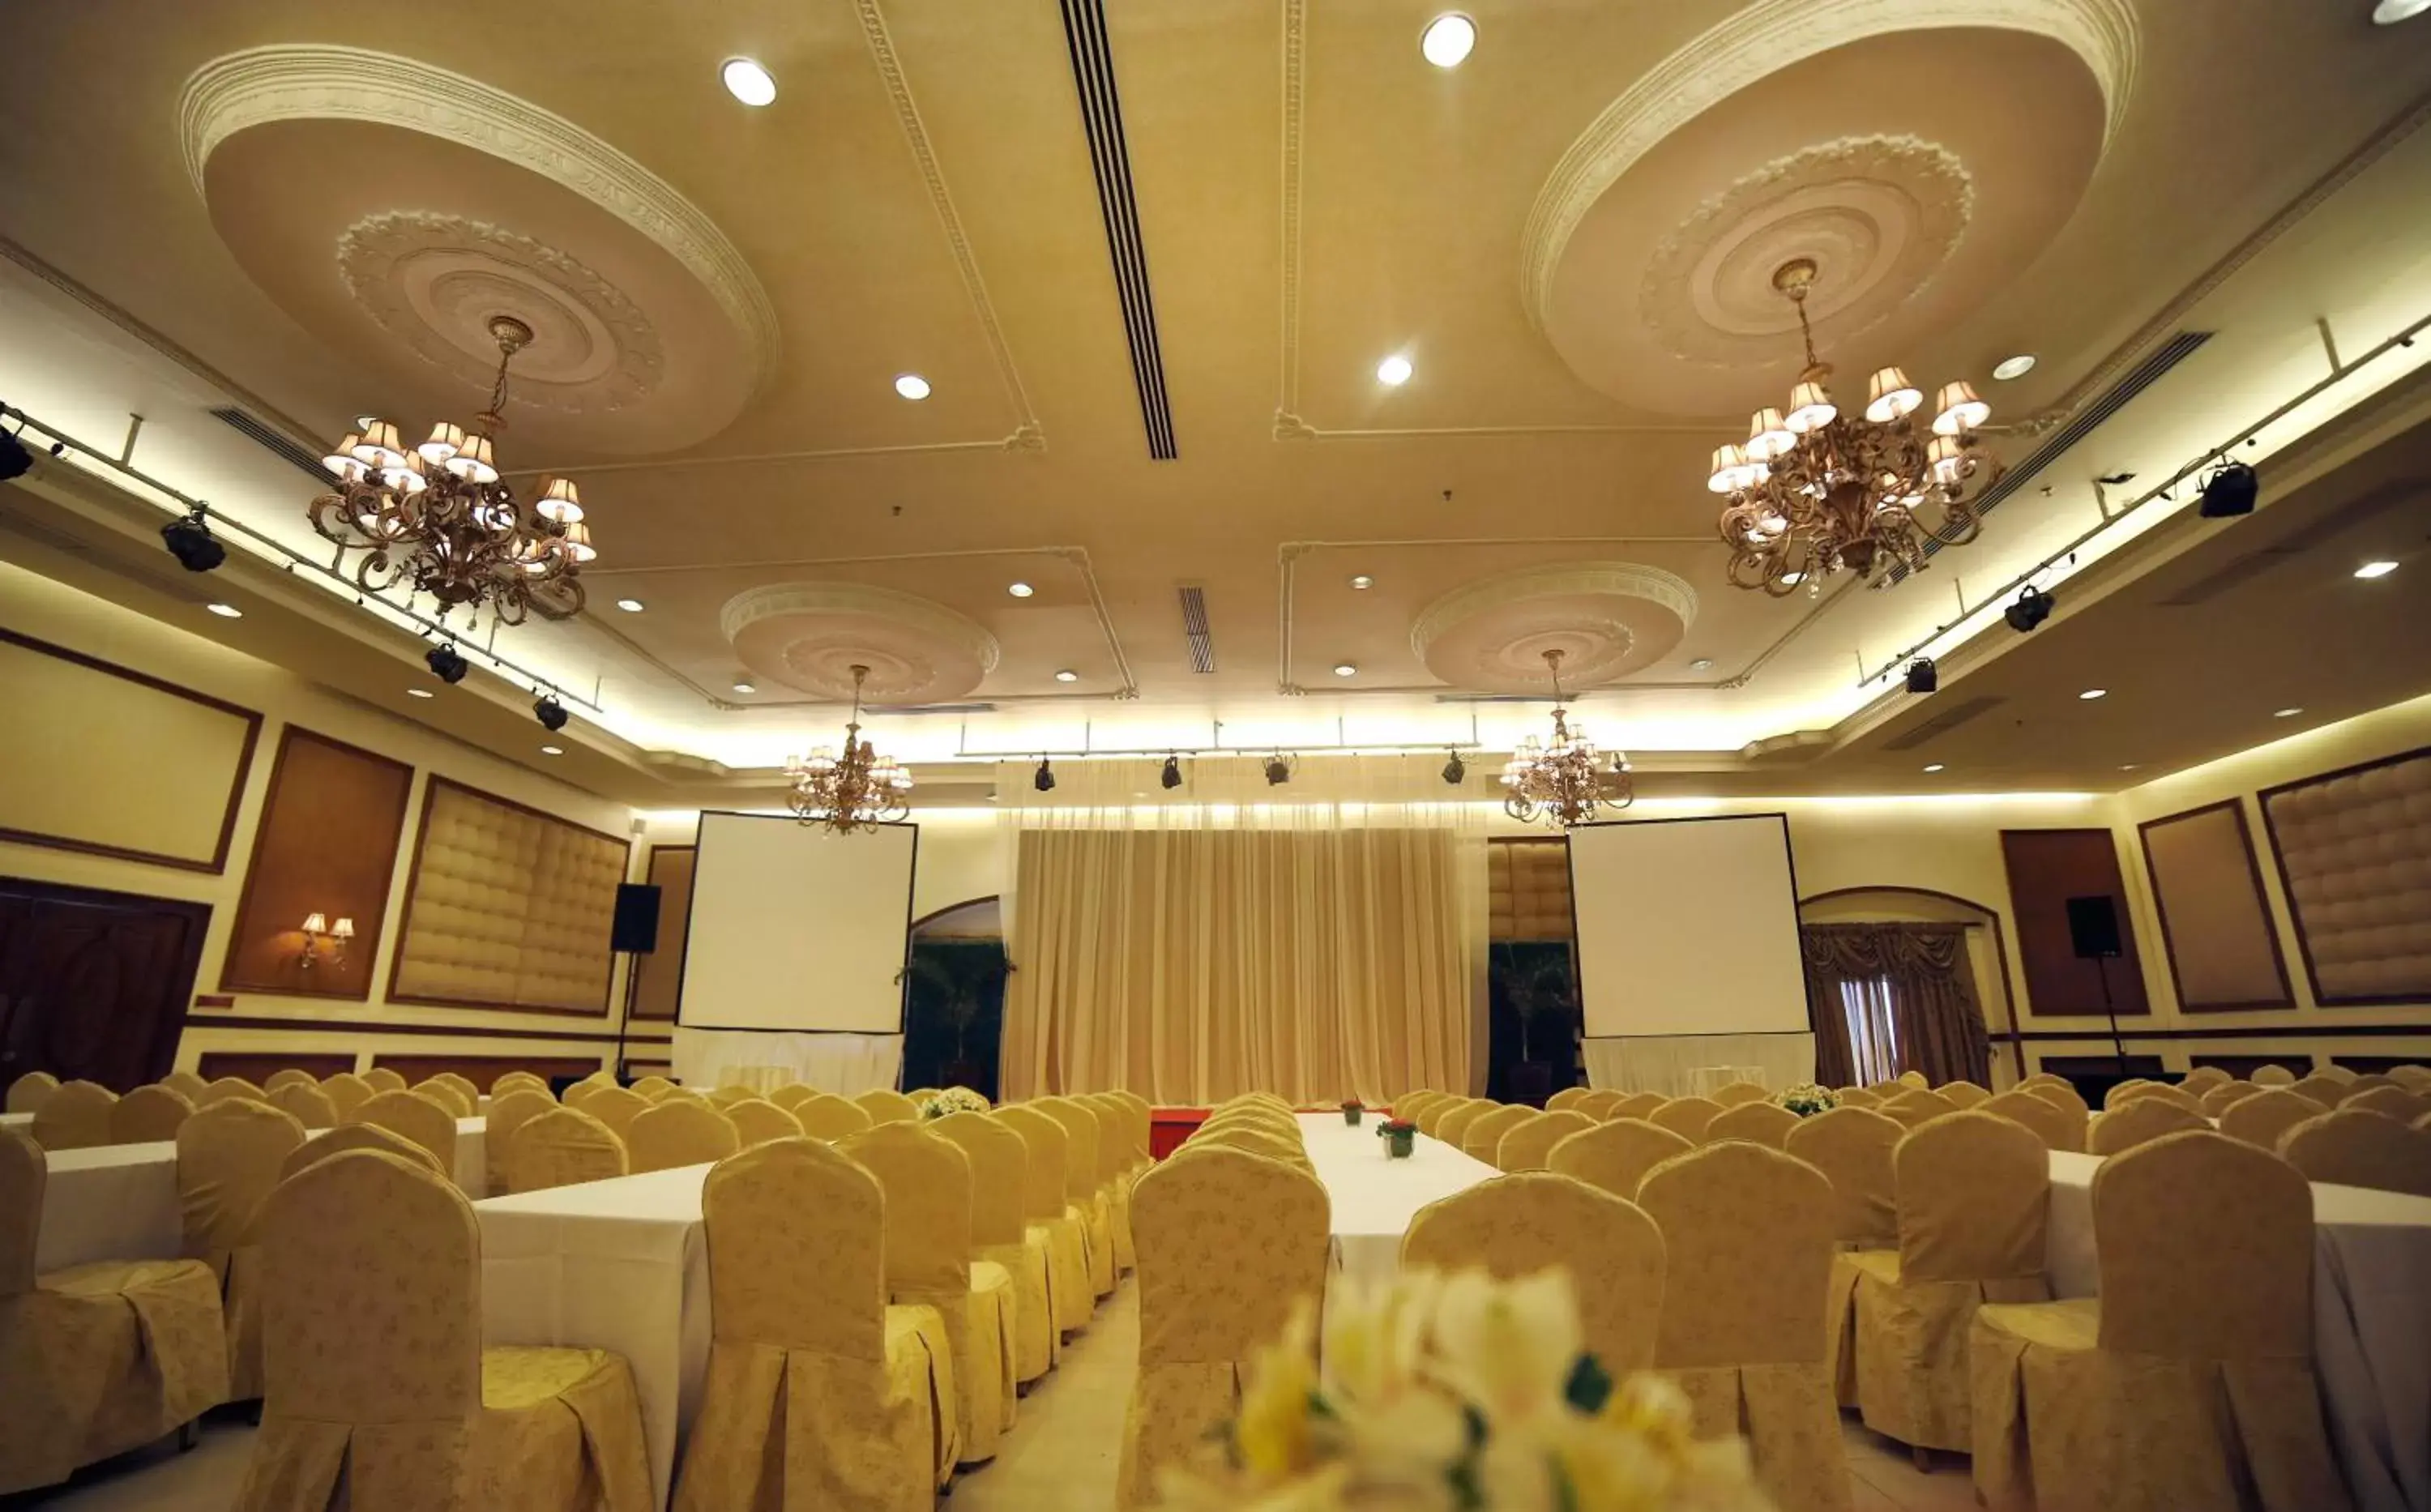 Banquet/Function facilities, Banquet Facilities in Villa Caceres Hotel